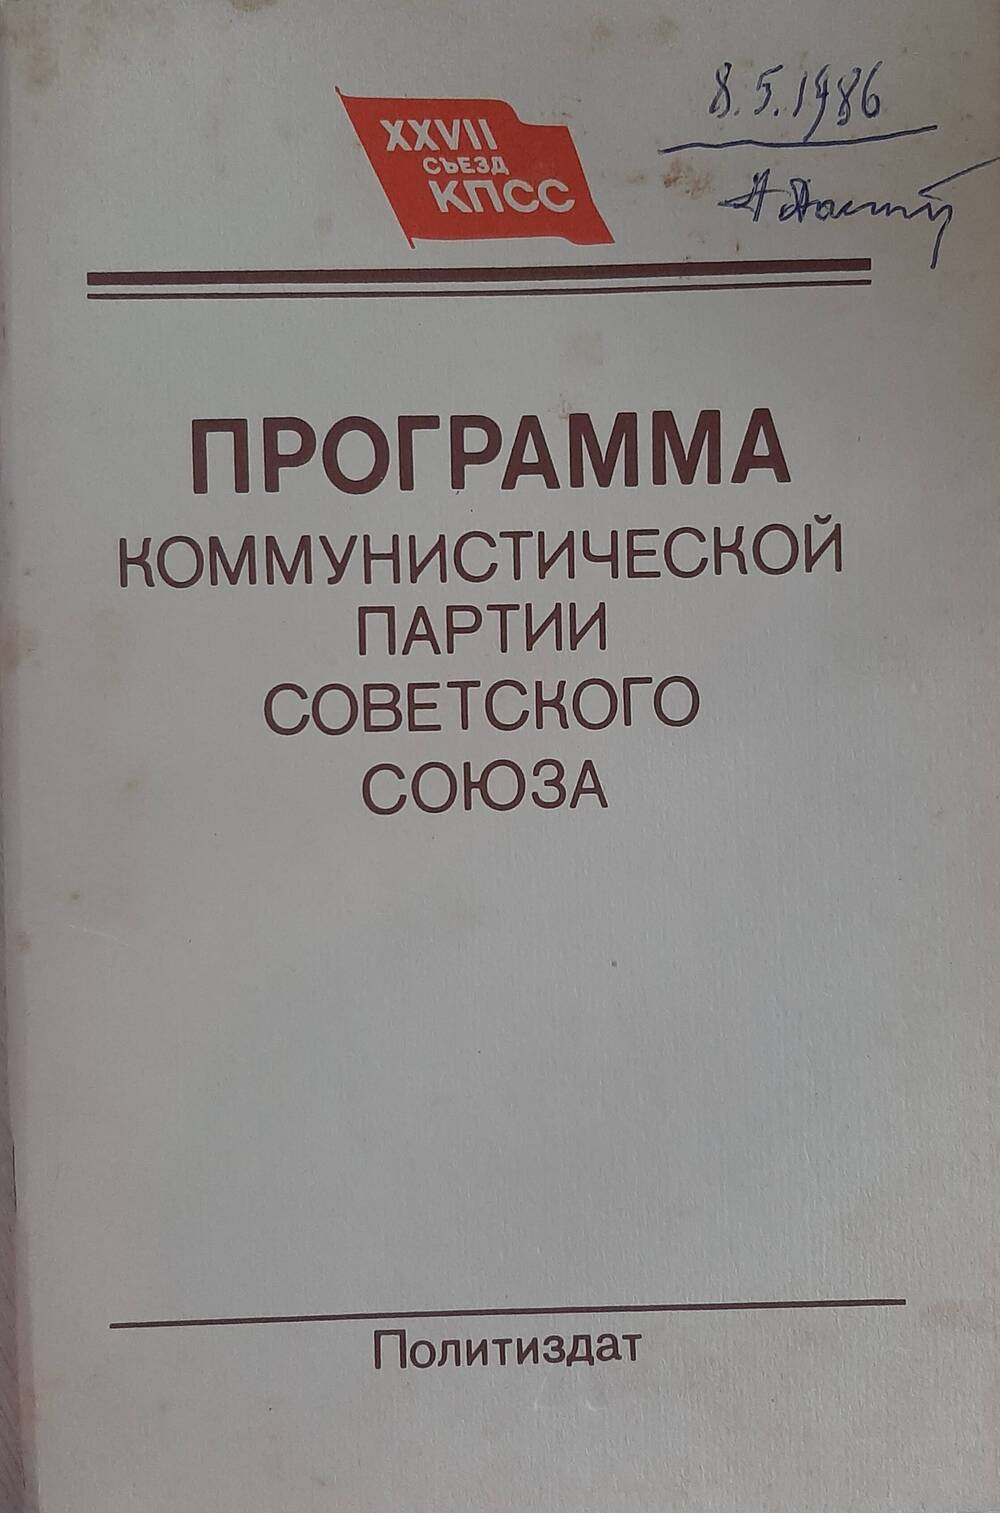 Брошюра. Программа Коммунистической партии Советского союза